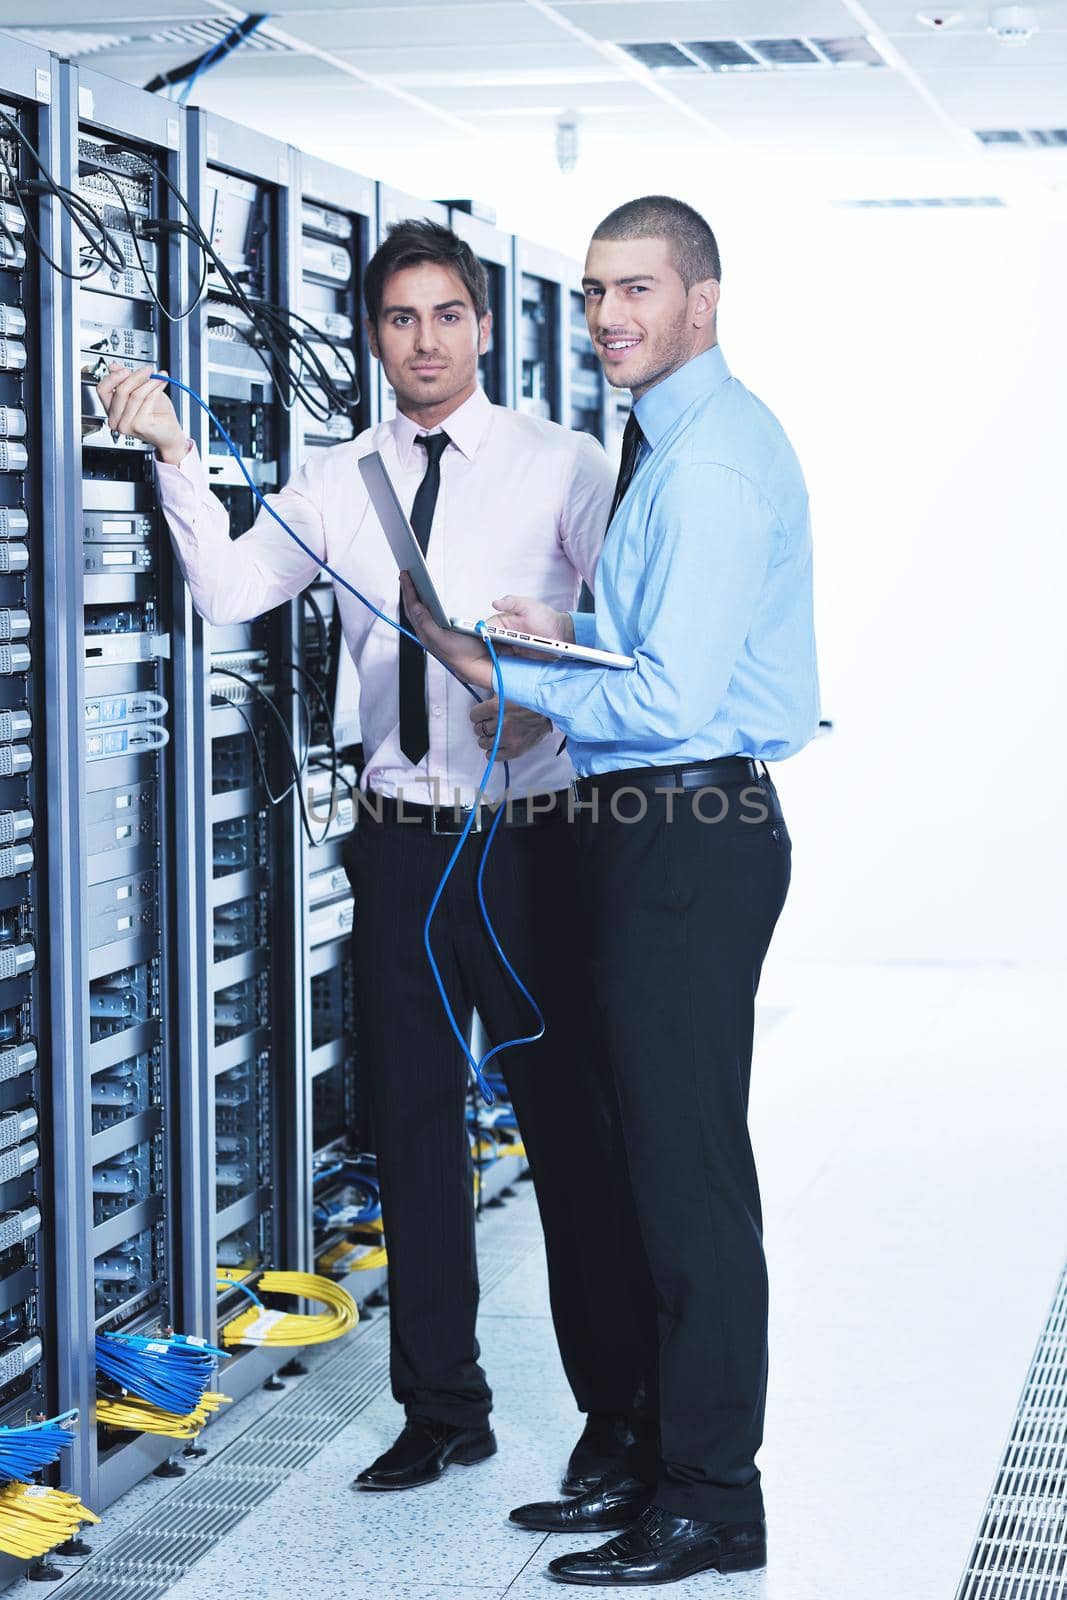 it enineers in network server room by dotshock